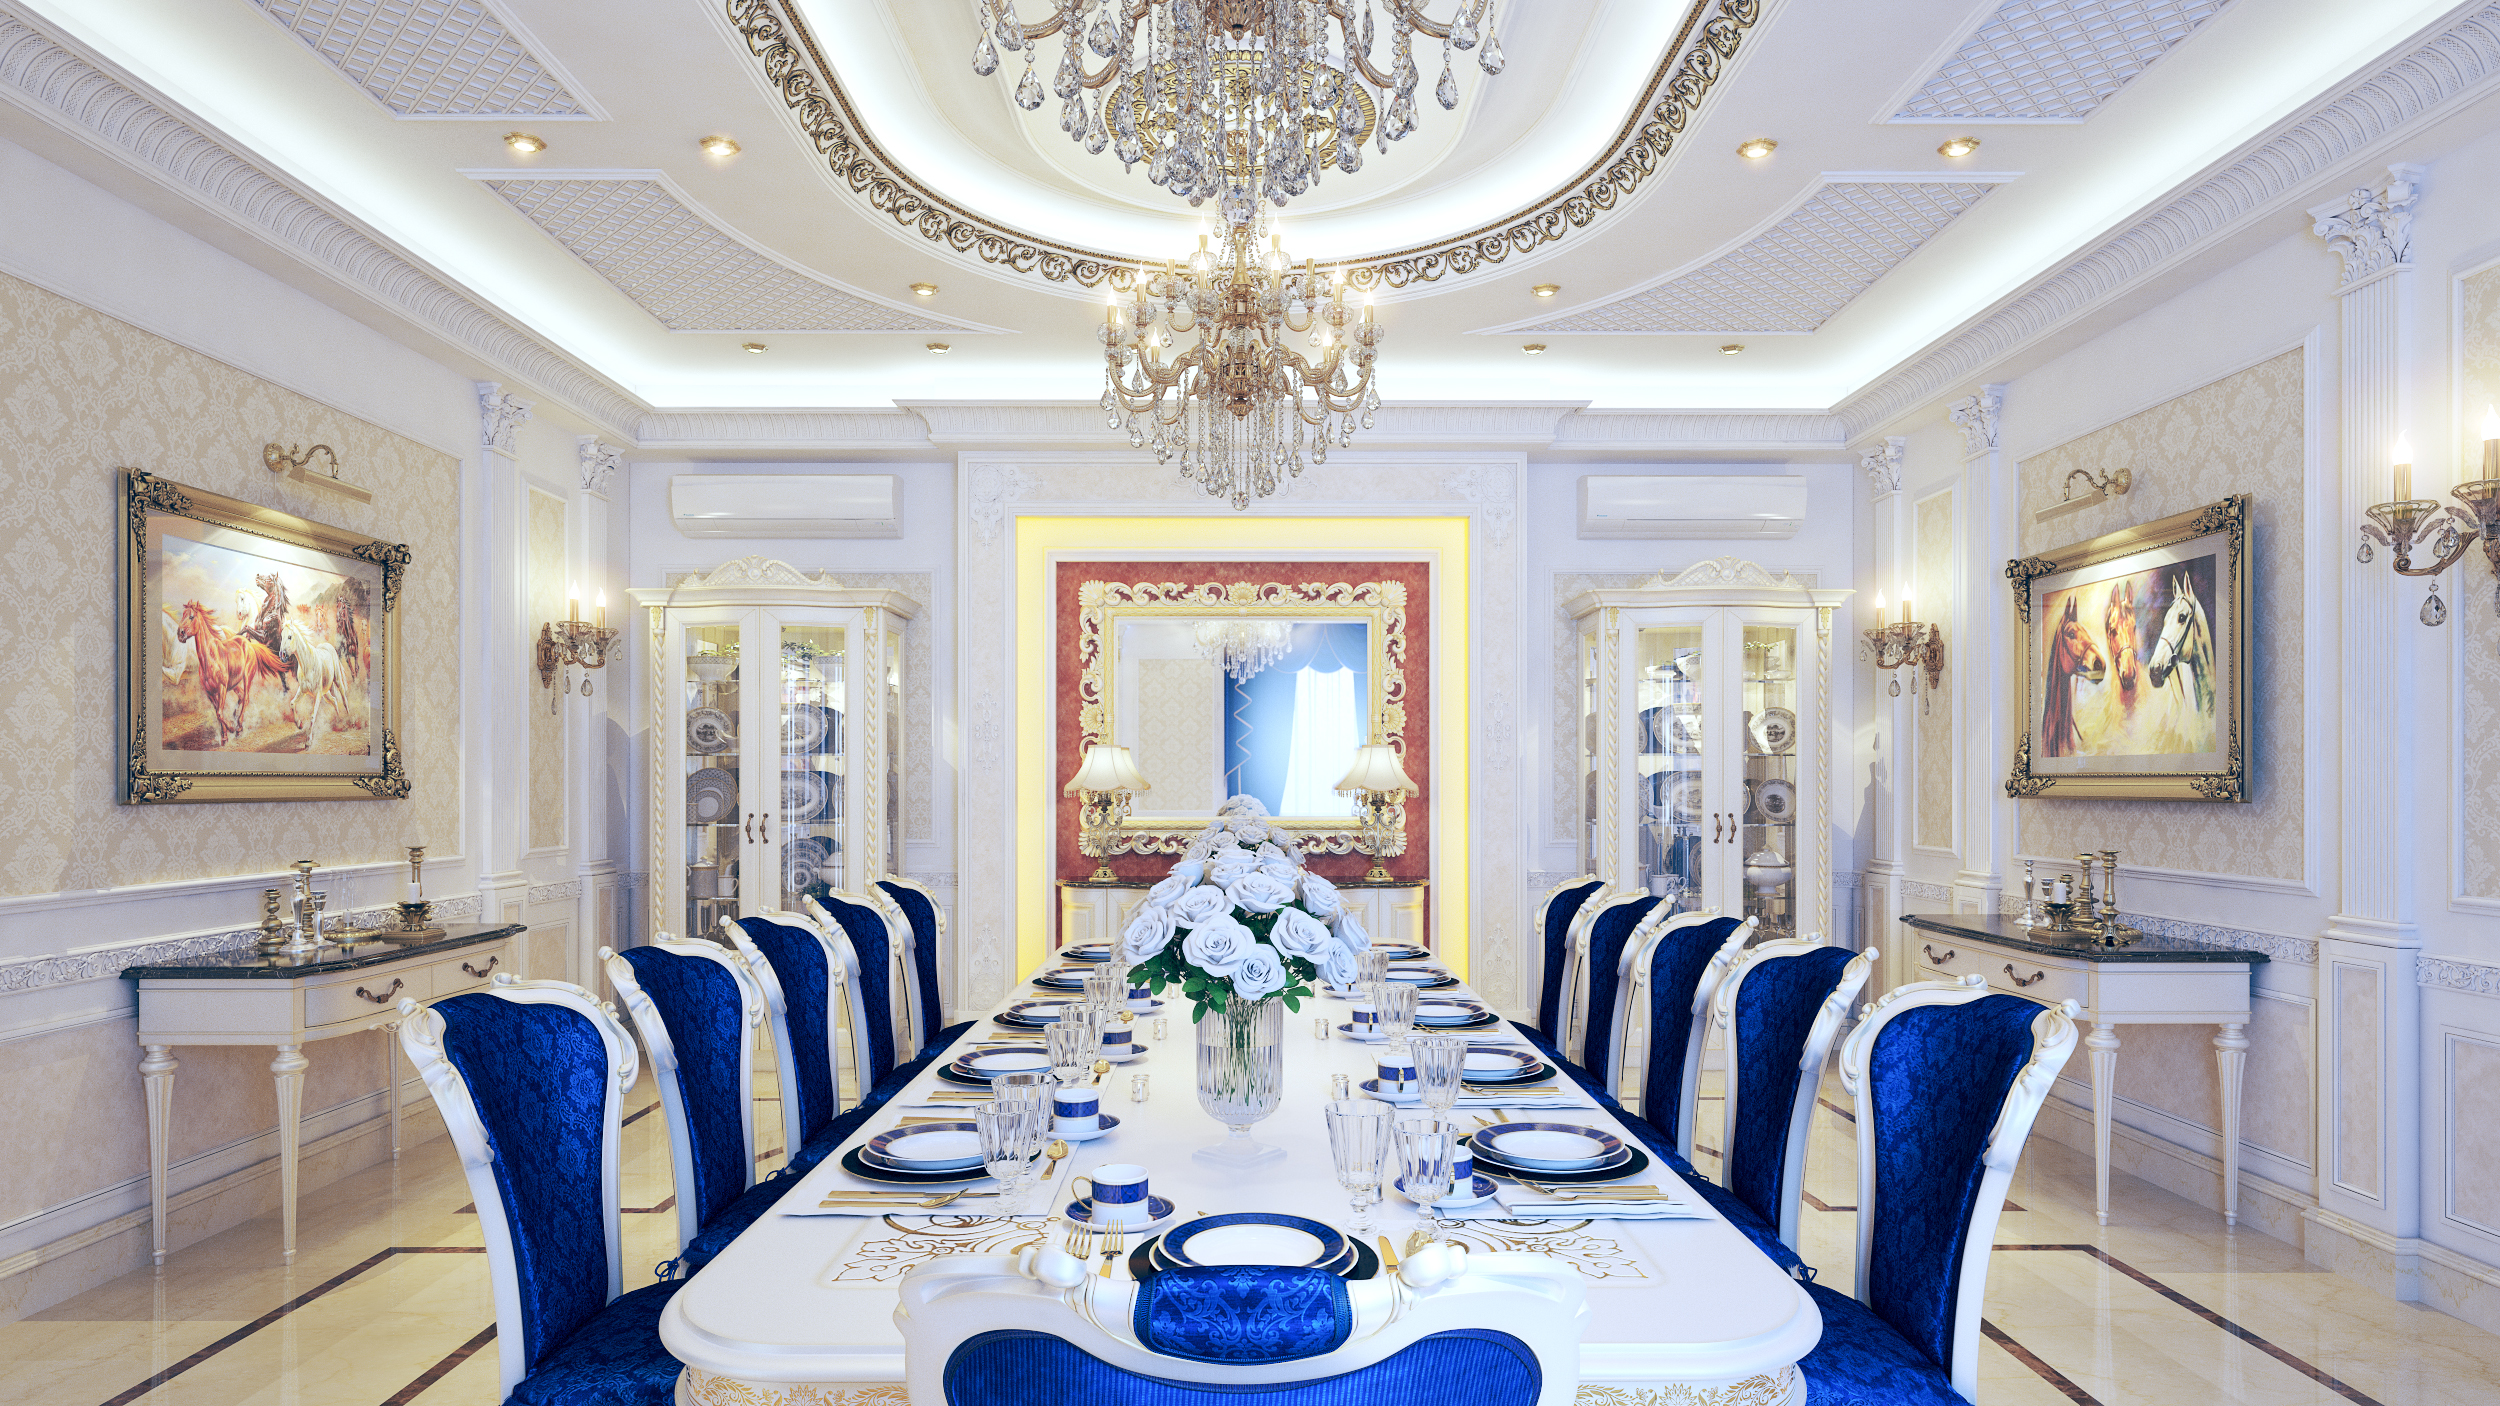 Área de jantar estilo clássico em 3d max vray 3.0 imagem